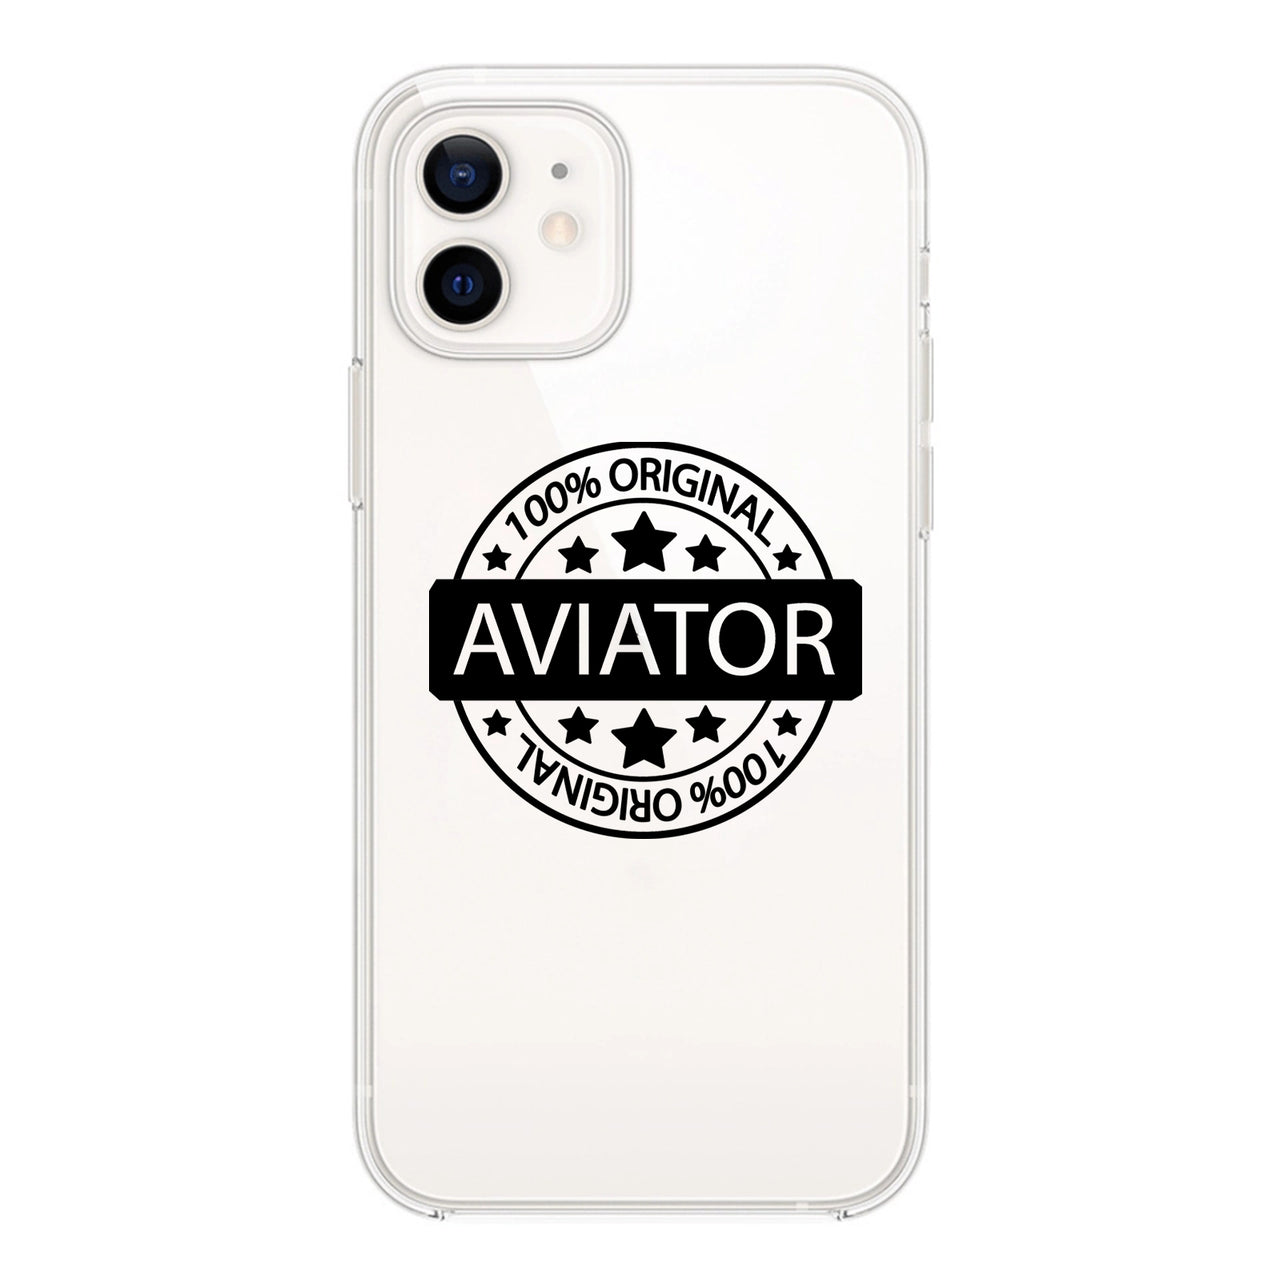 100 Original Aviator Designed Transparent Silicone iPhone Cases